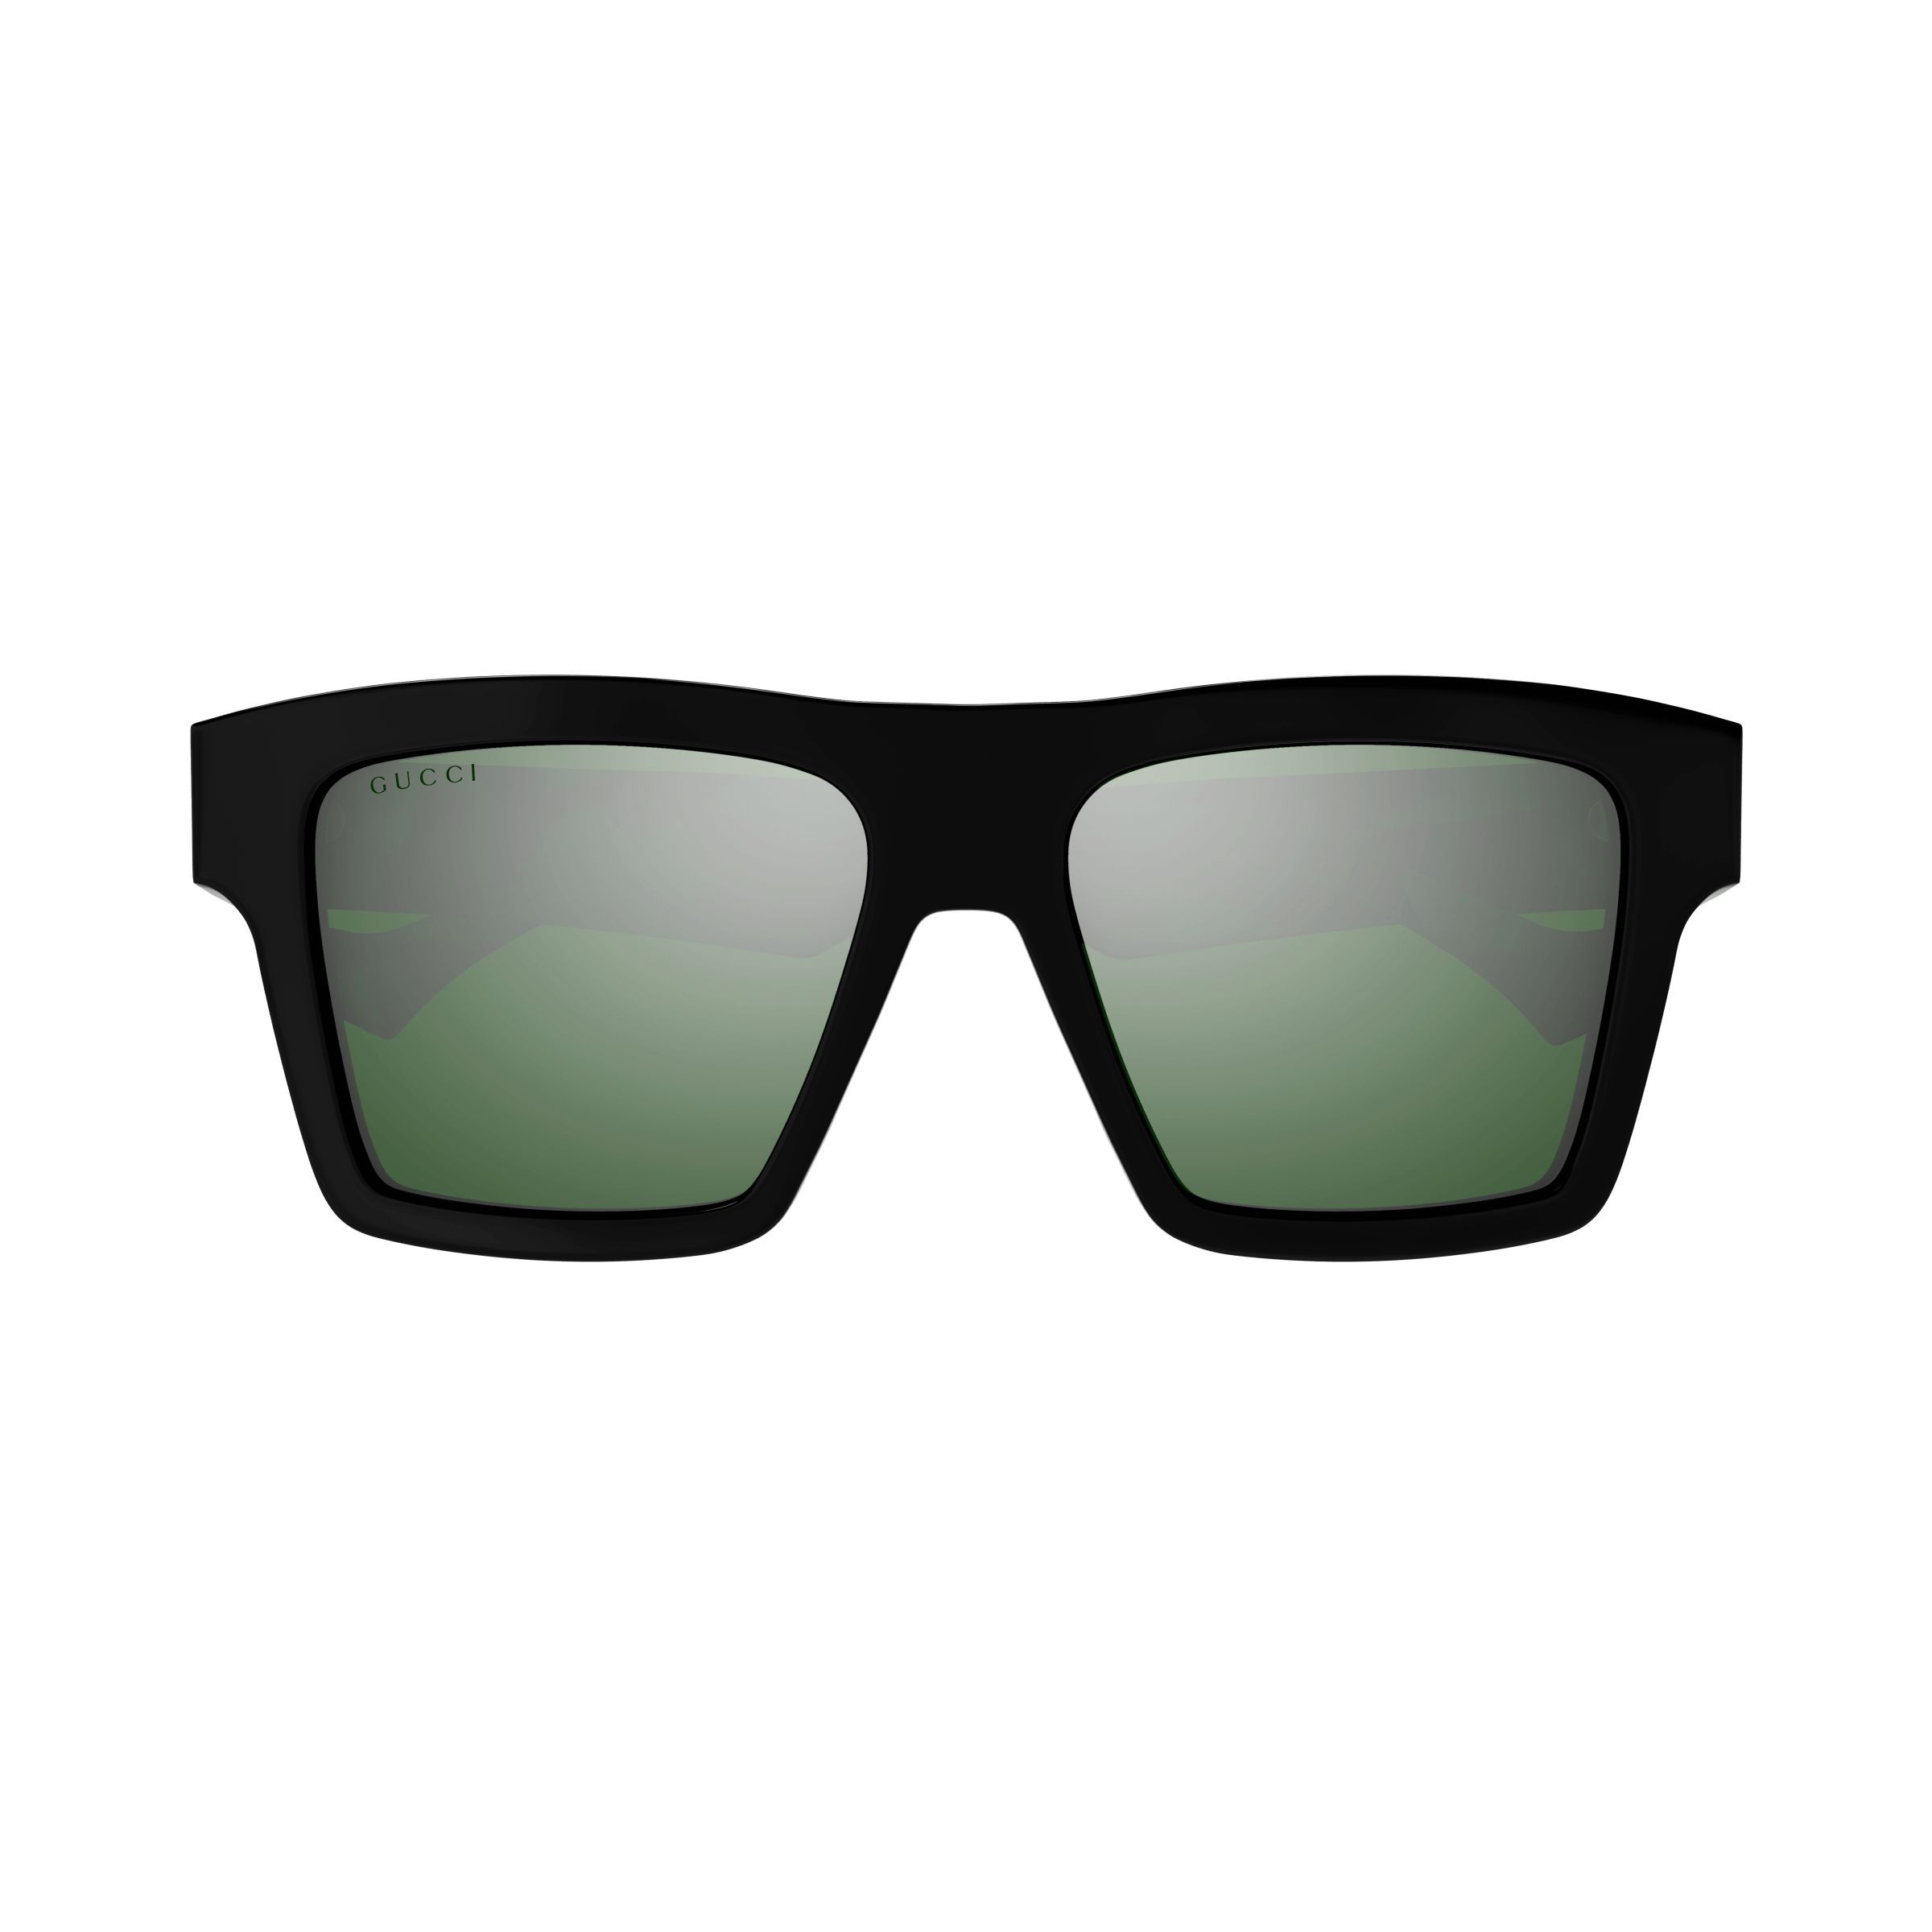 GG0962S Square Sunglasses  013 - size 55